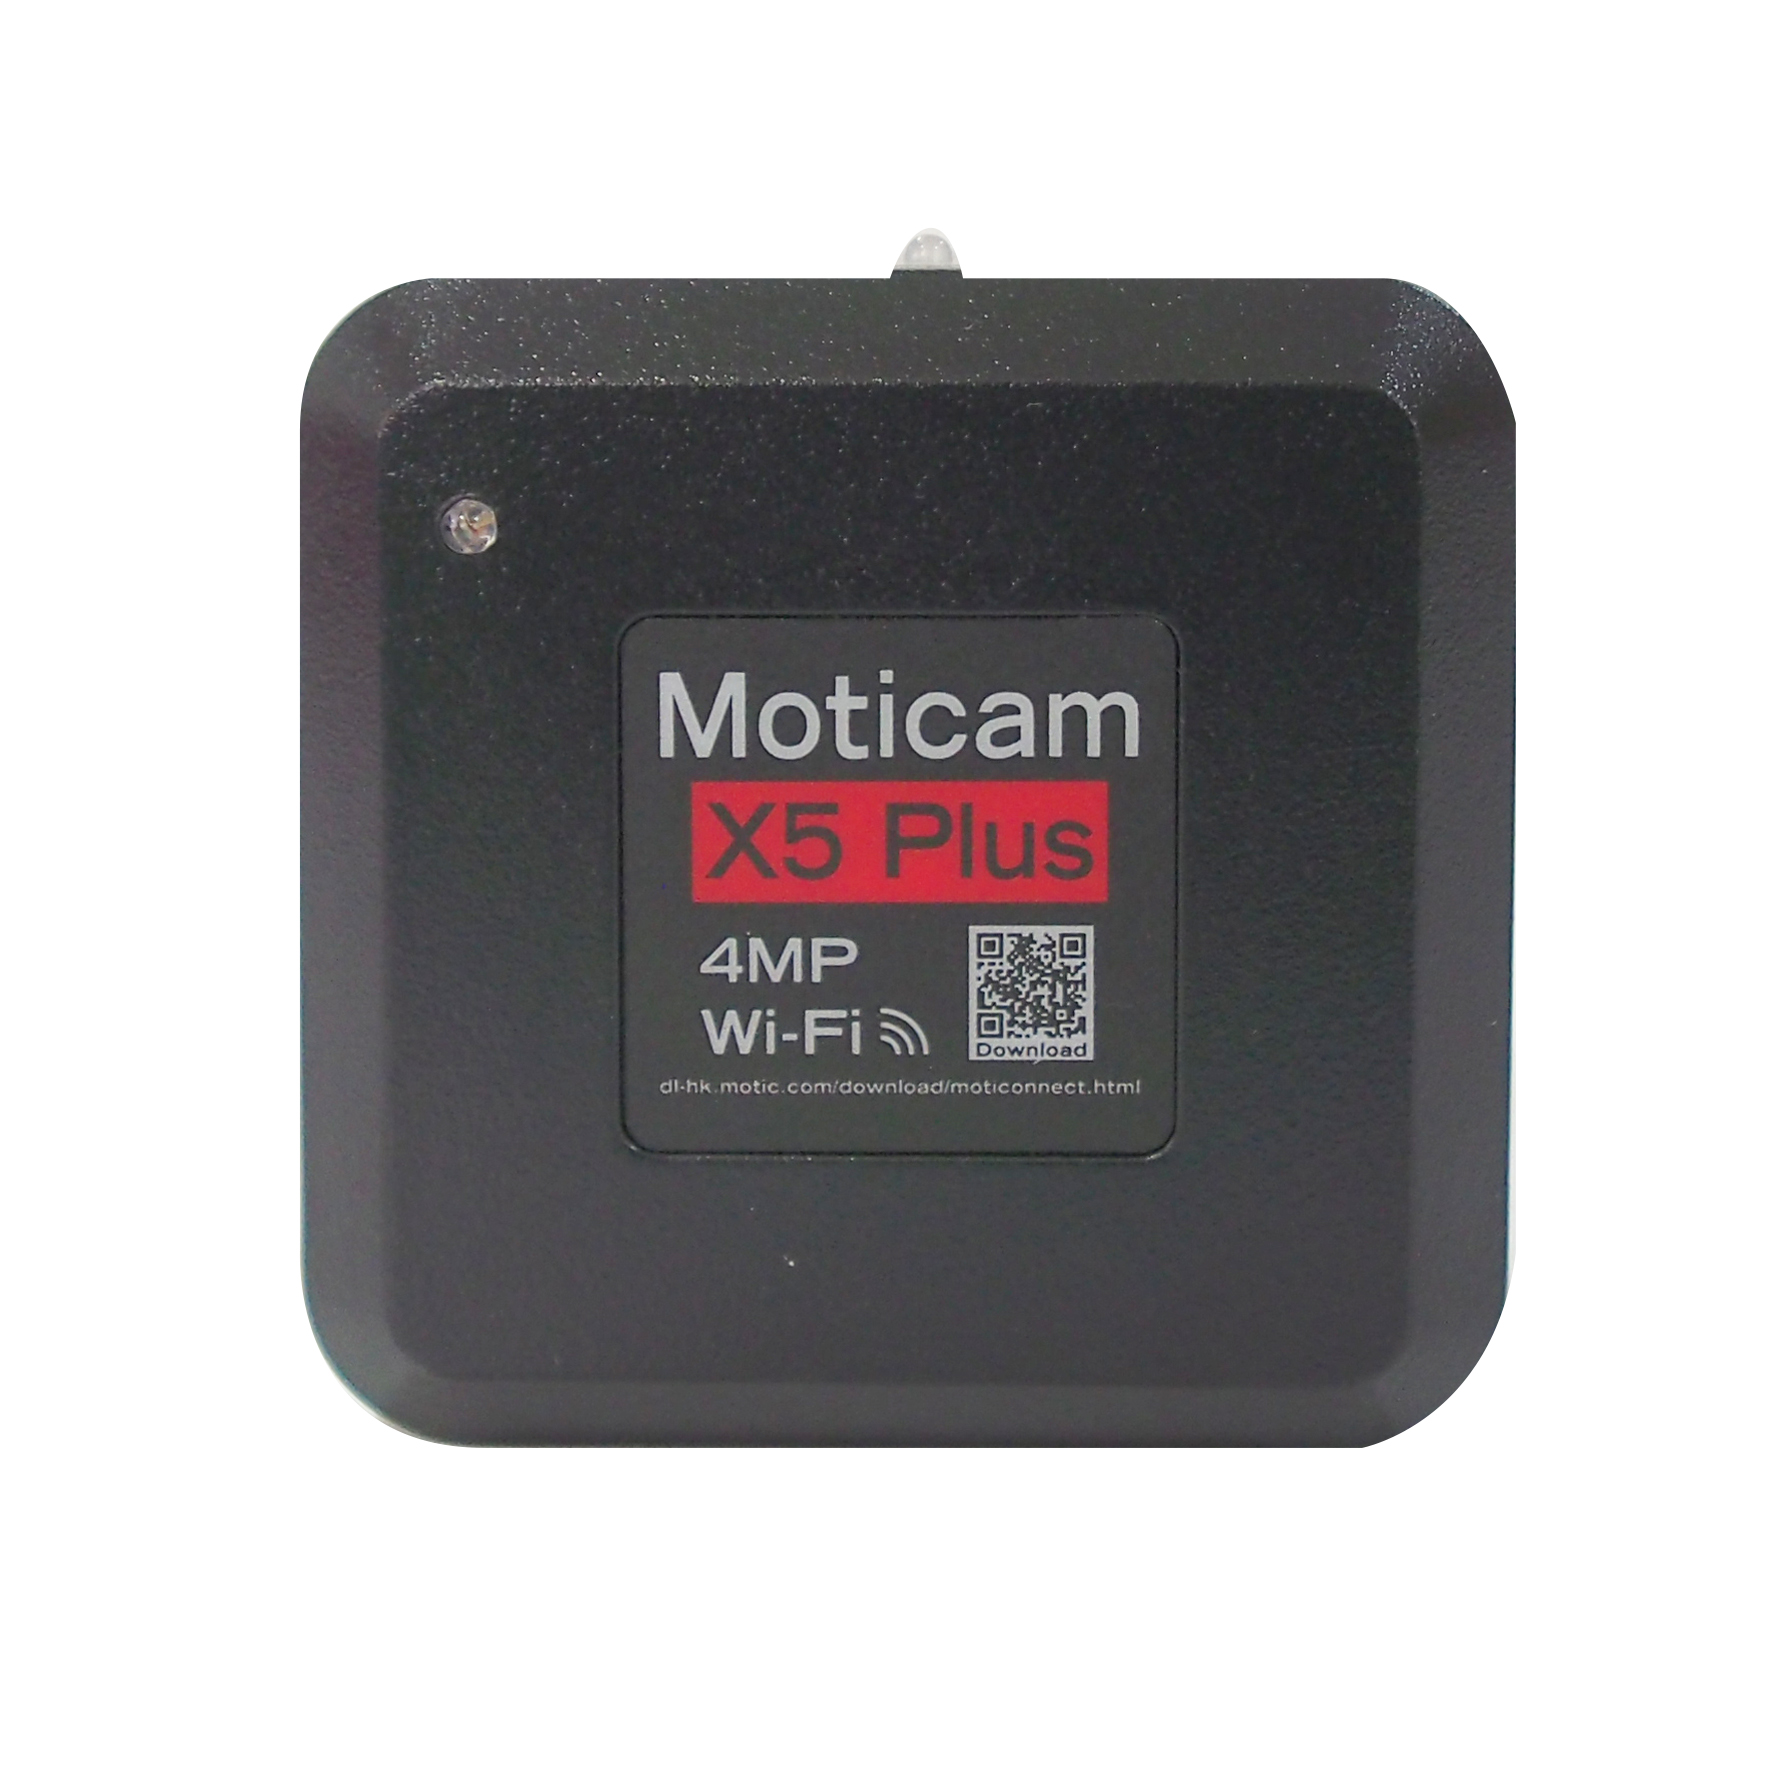 ชุดถ่ายทอดสัญญาณภาพจากกล้องจุลทรรศน์แบบ WiFi Moticam X5